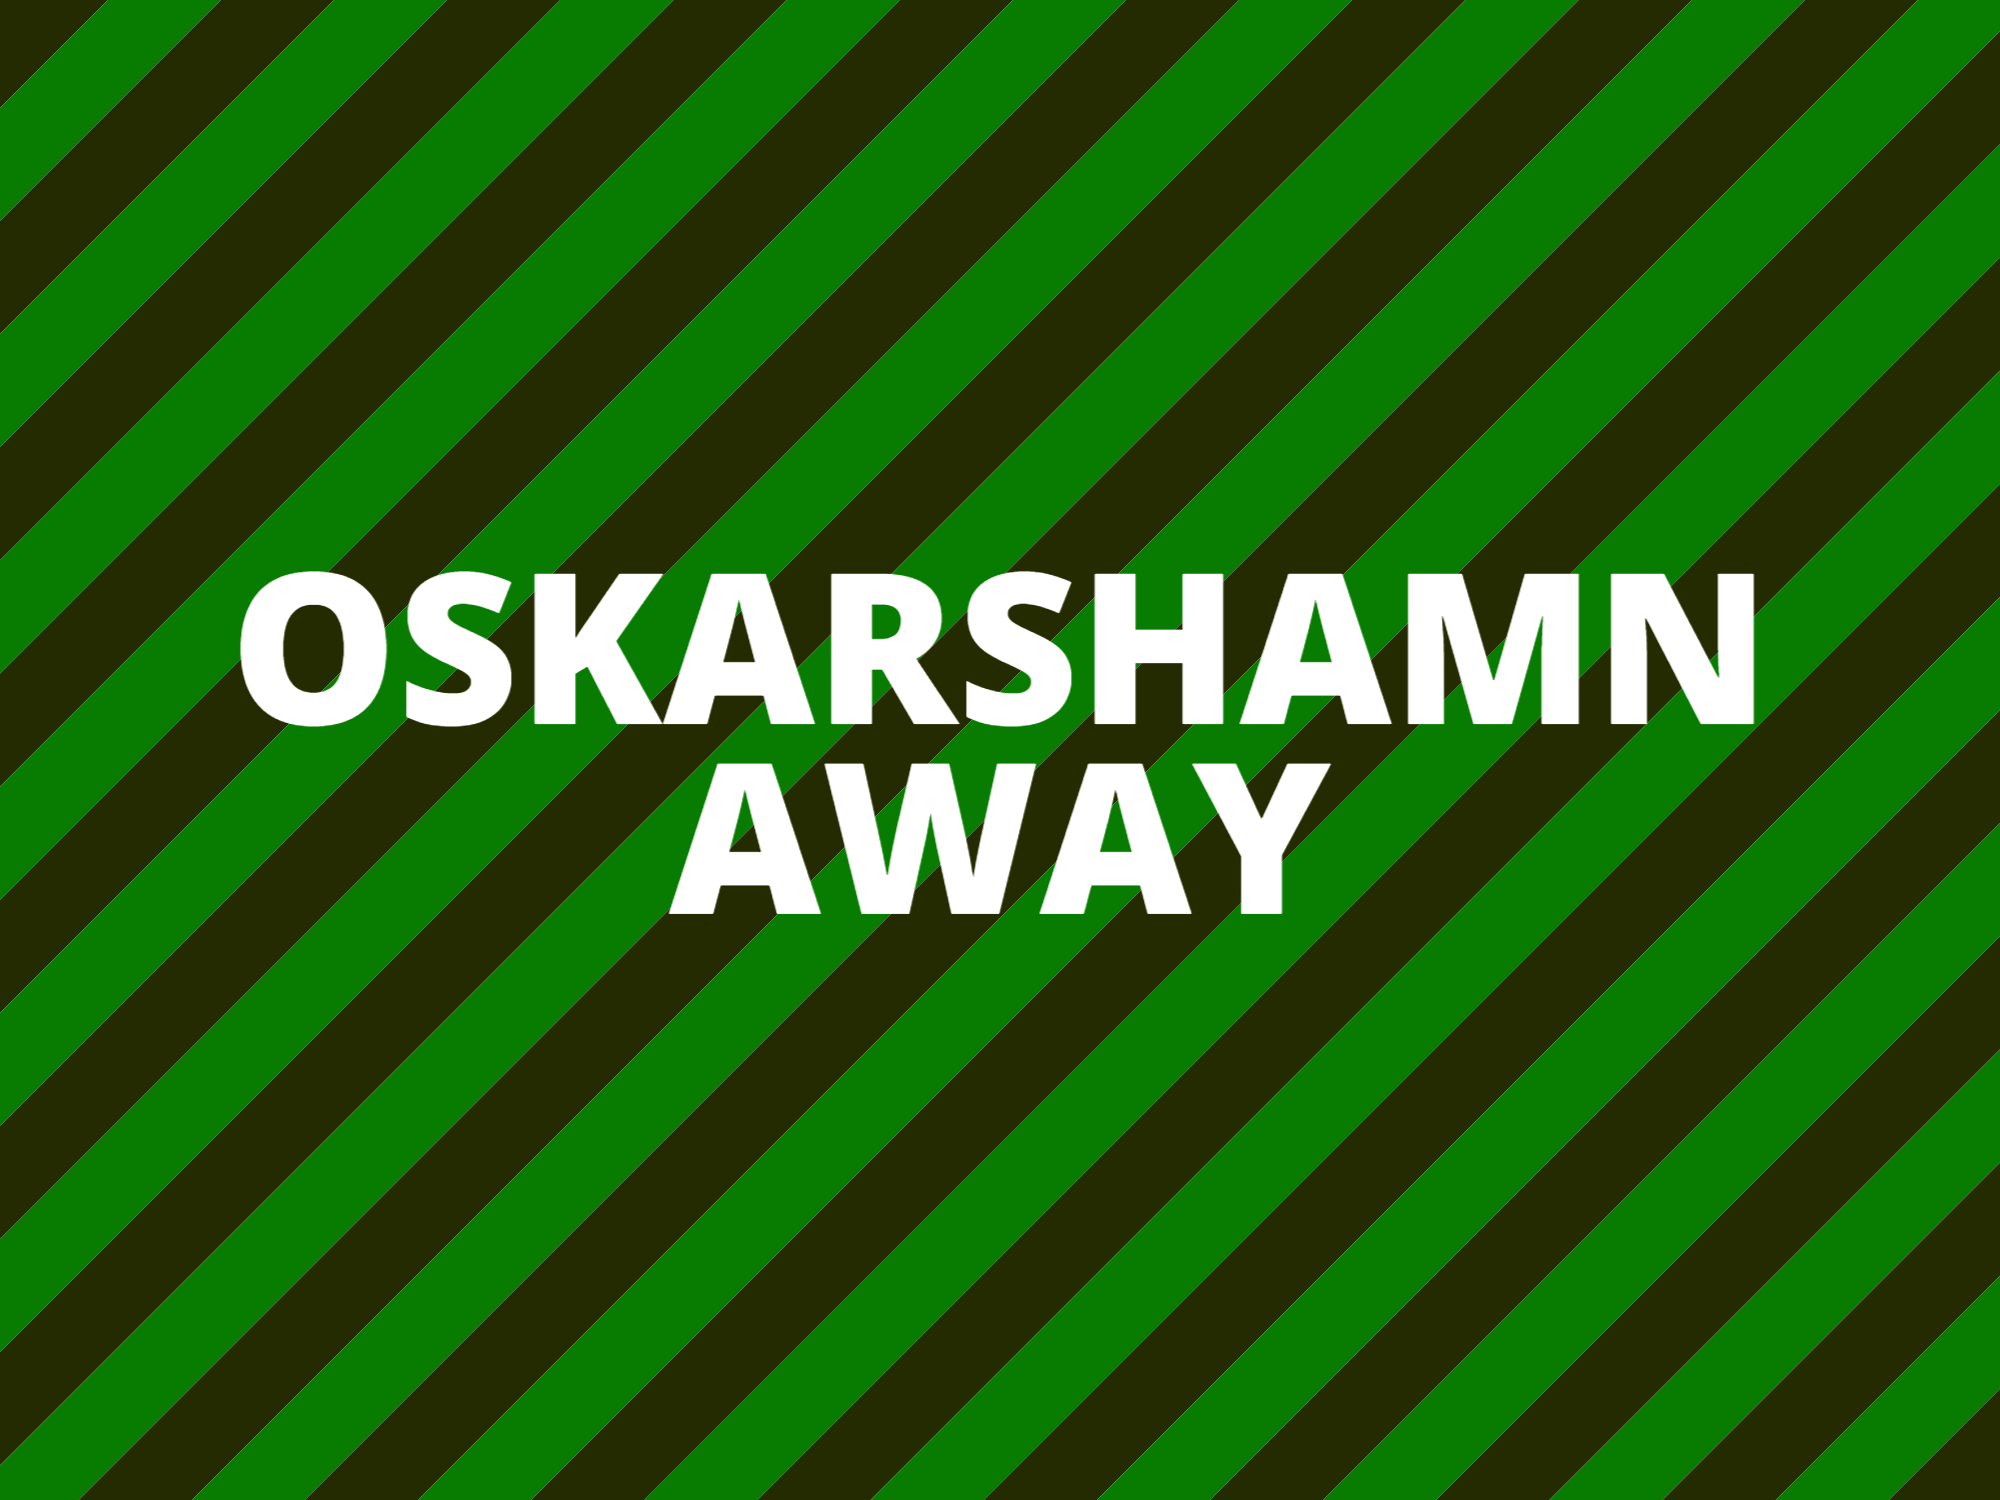 Oskarshamn Away